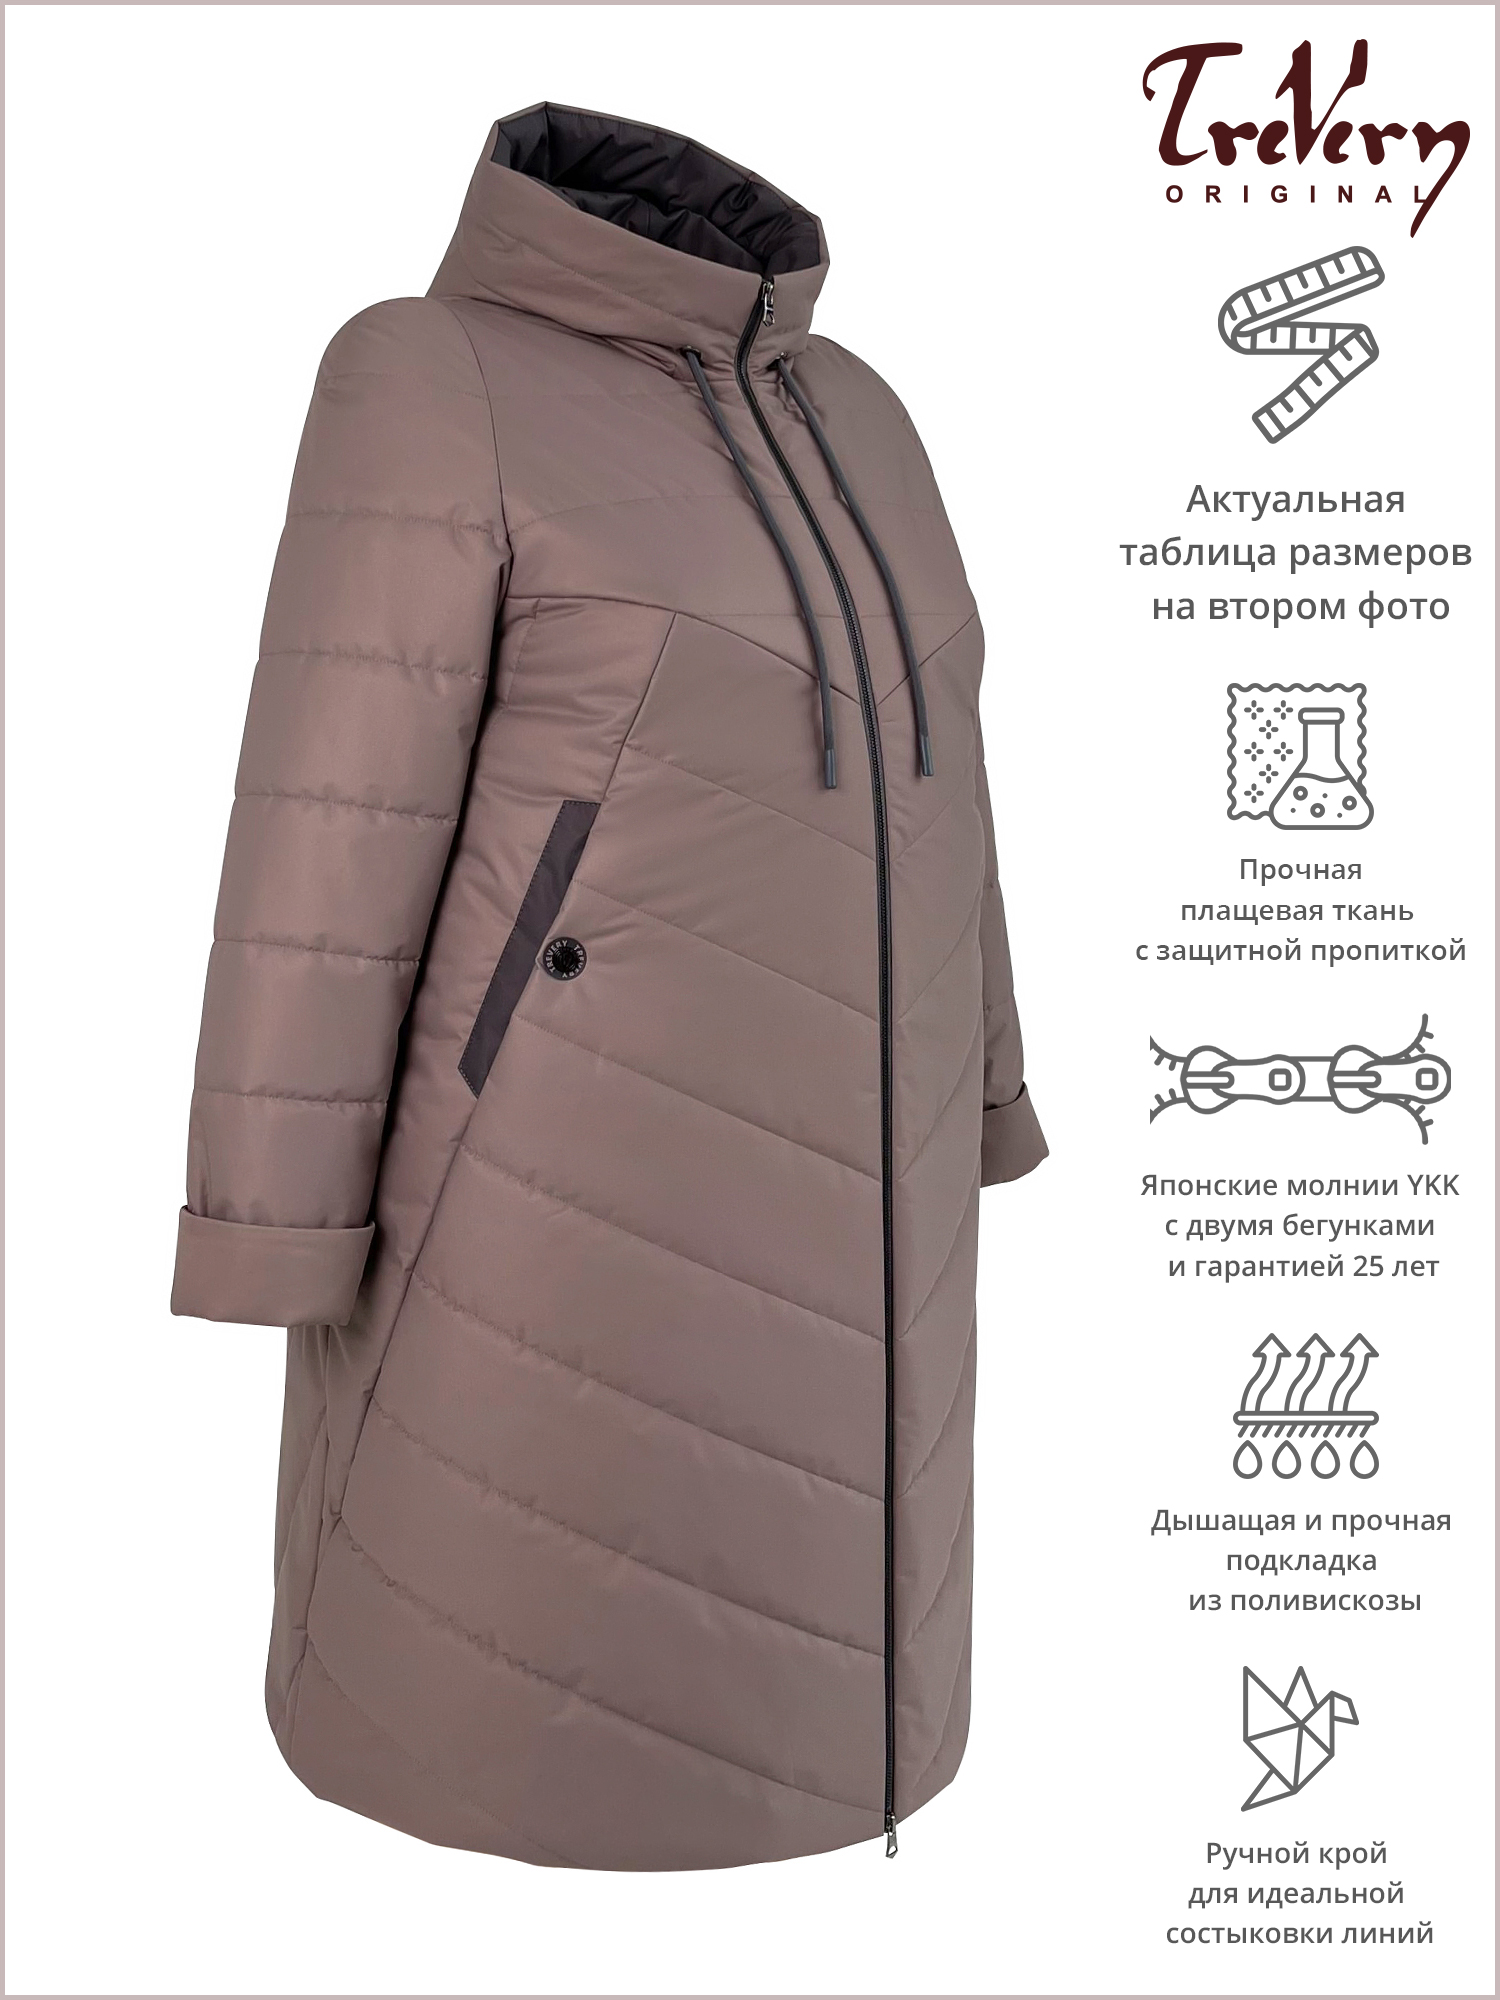 Пальто женское Trevery 922 коричневое 62 RU